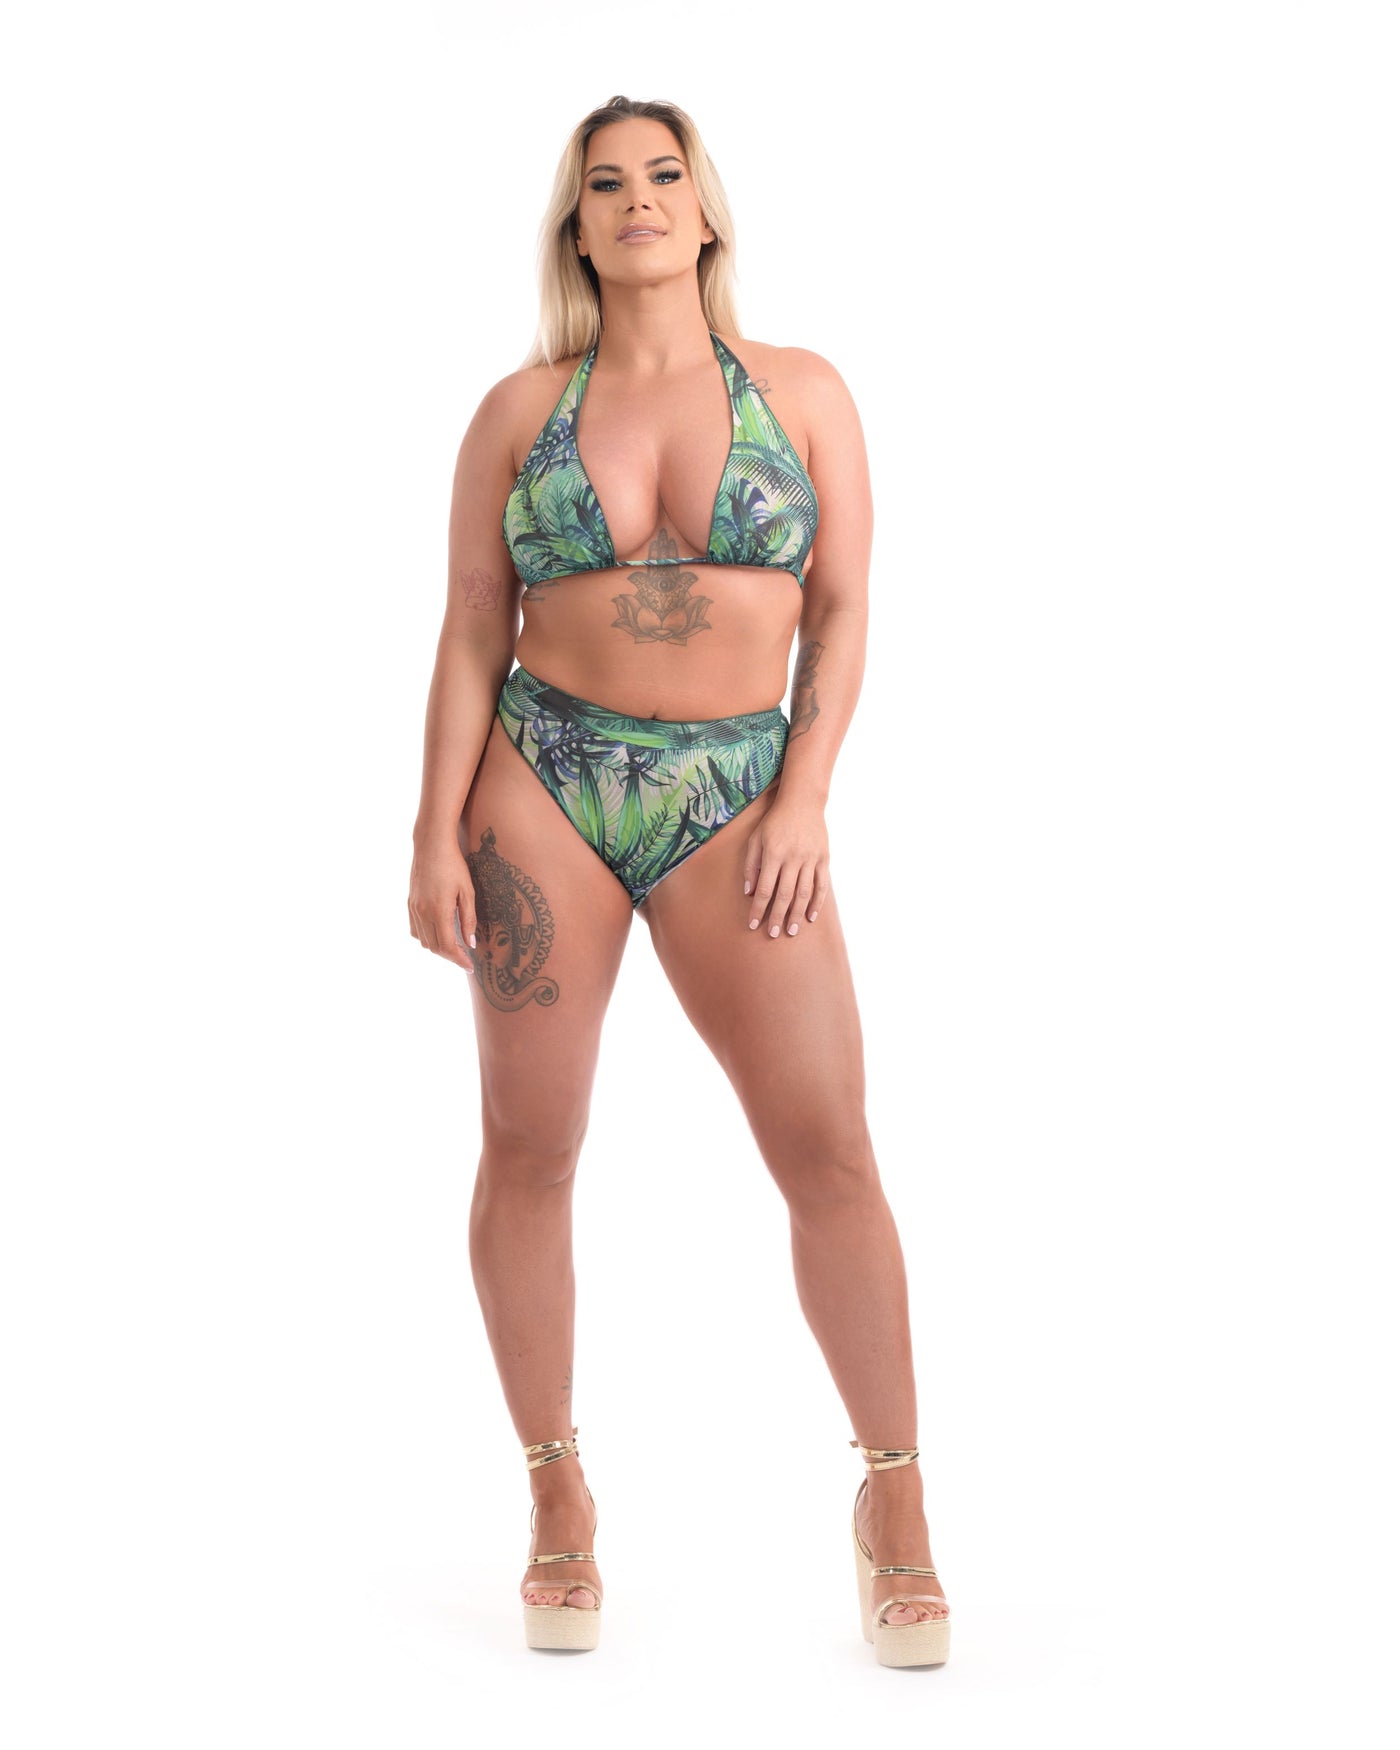 Girl in green bikini standing forward